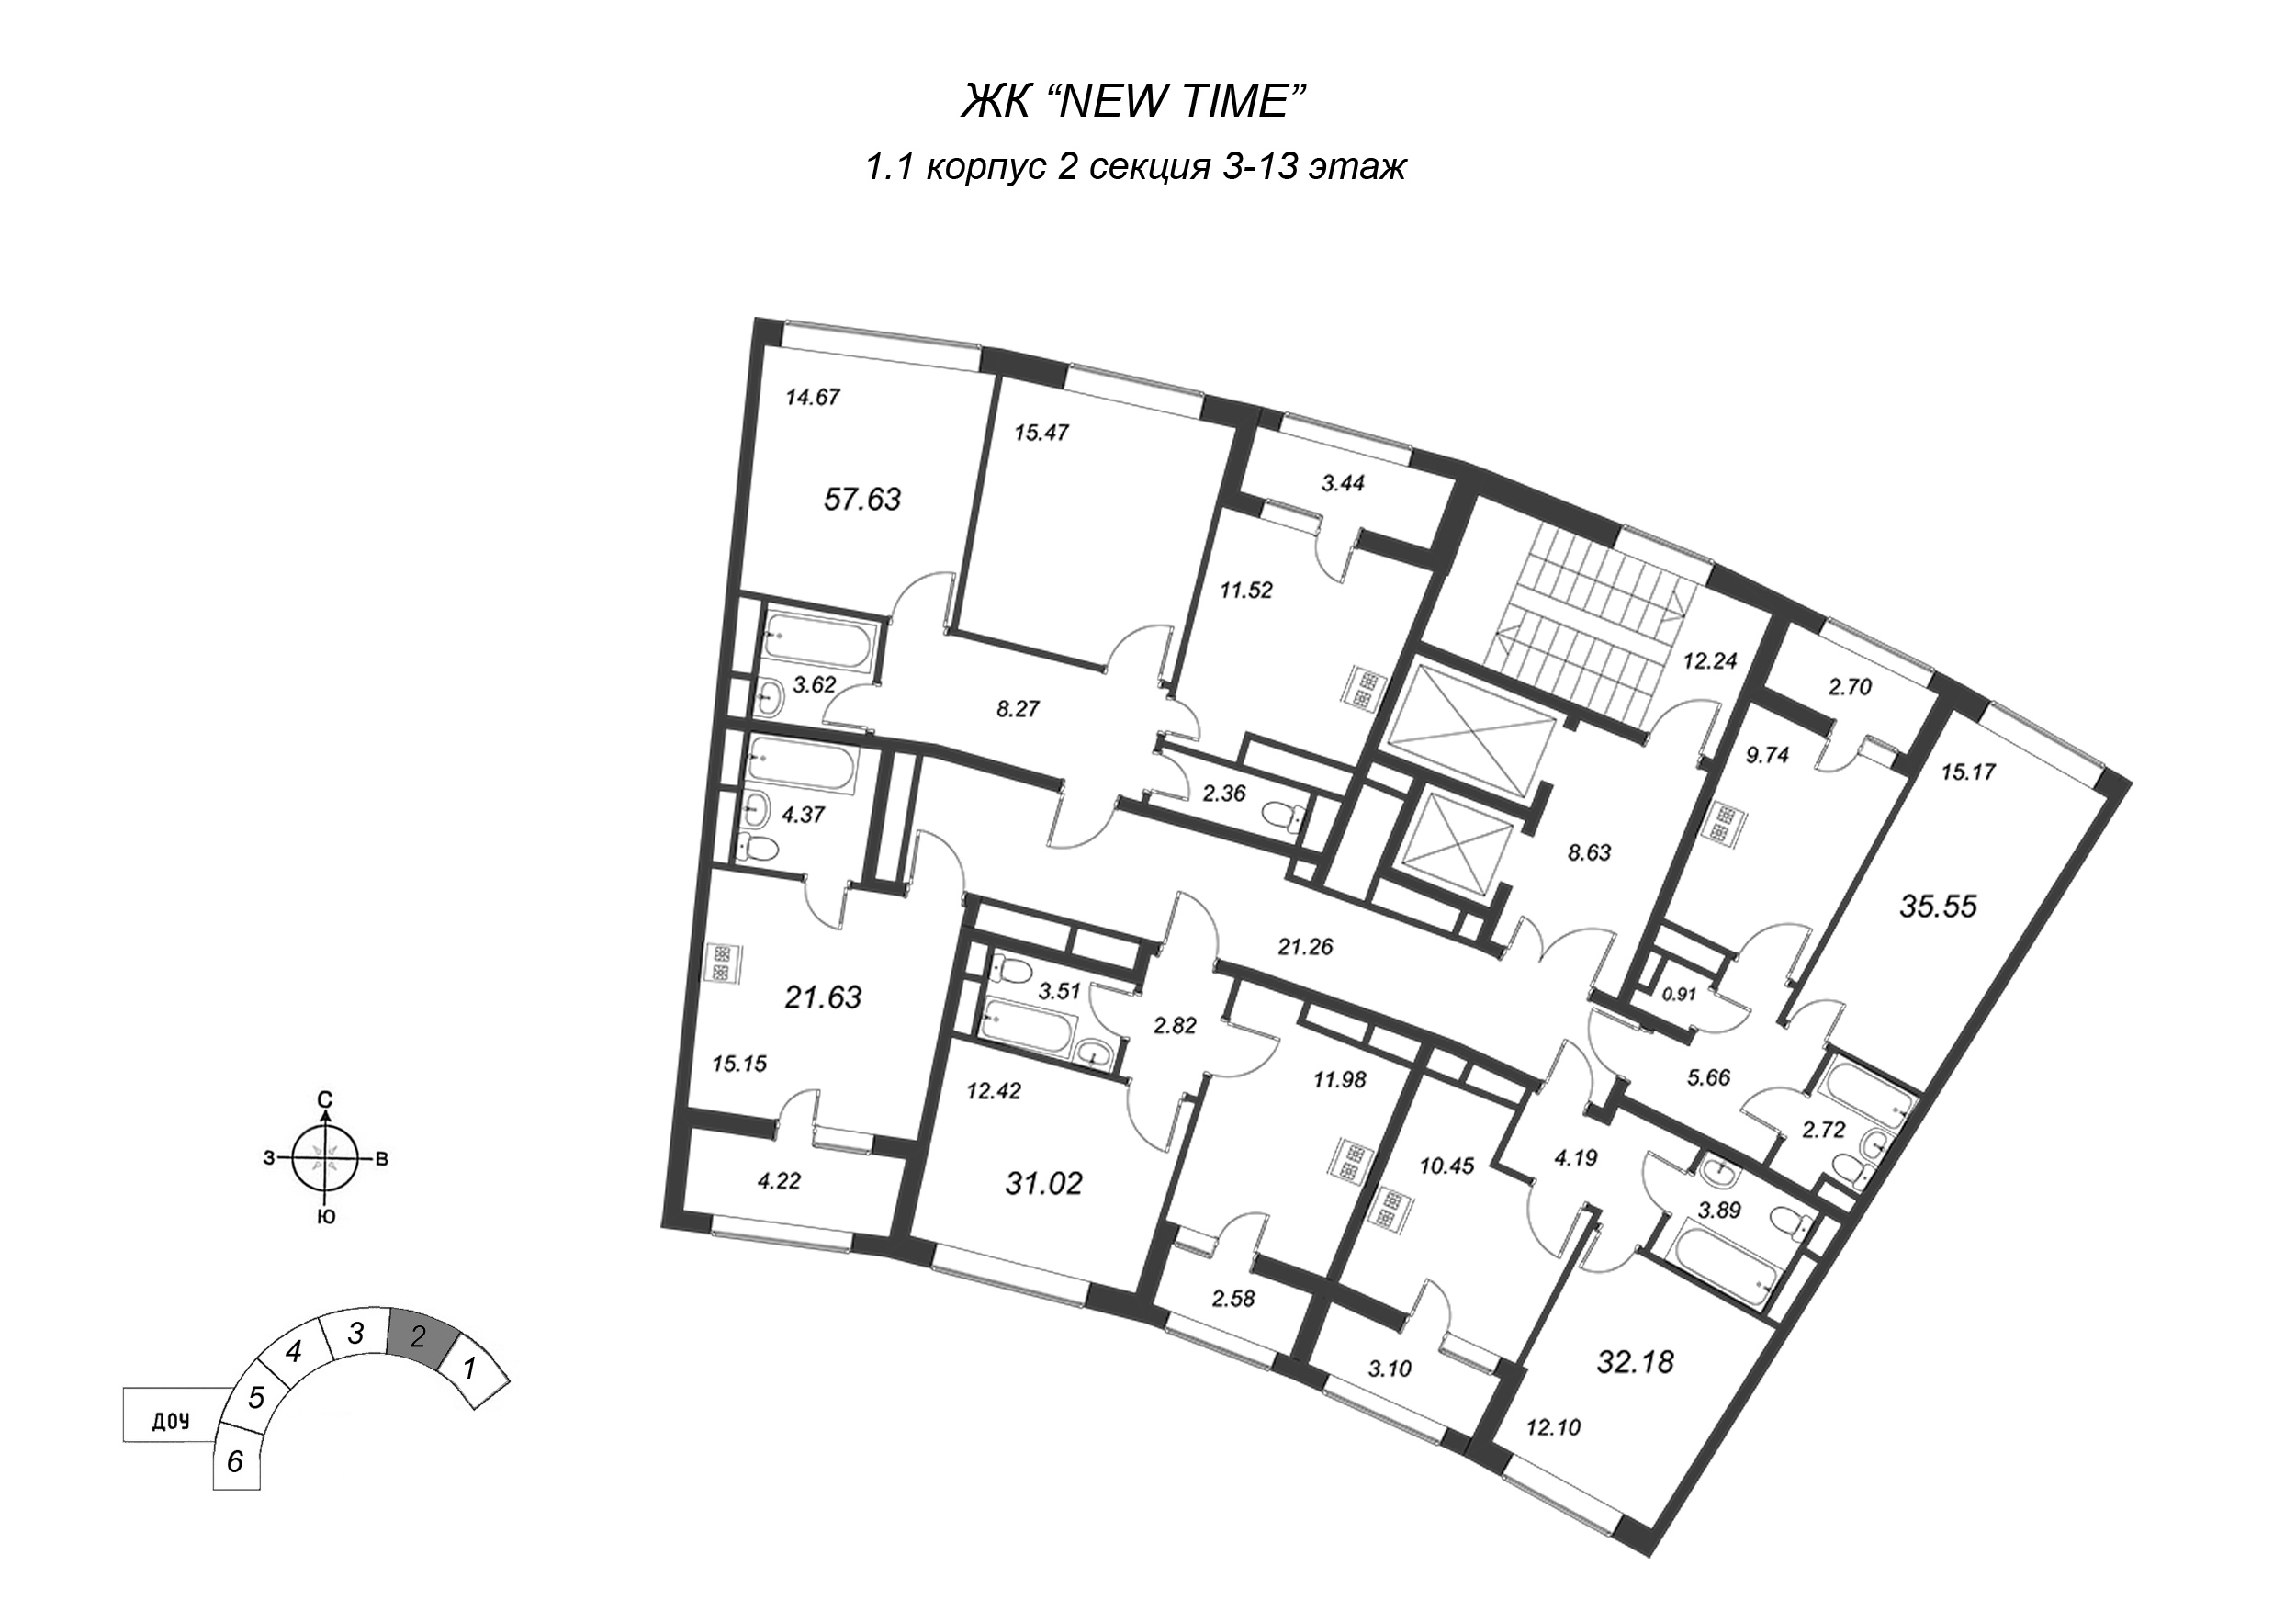 Квартира-студия, 21.63 м² в ЖК "NEW TIME" - планировка этажа